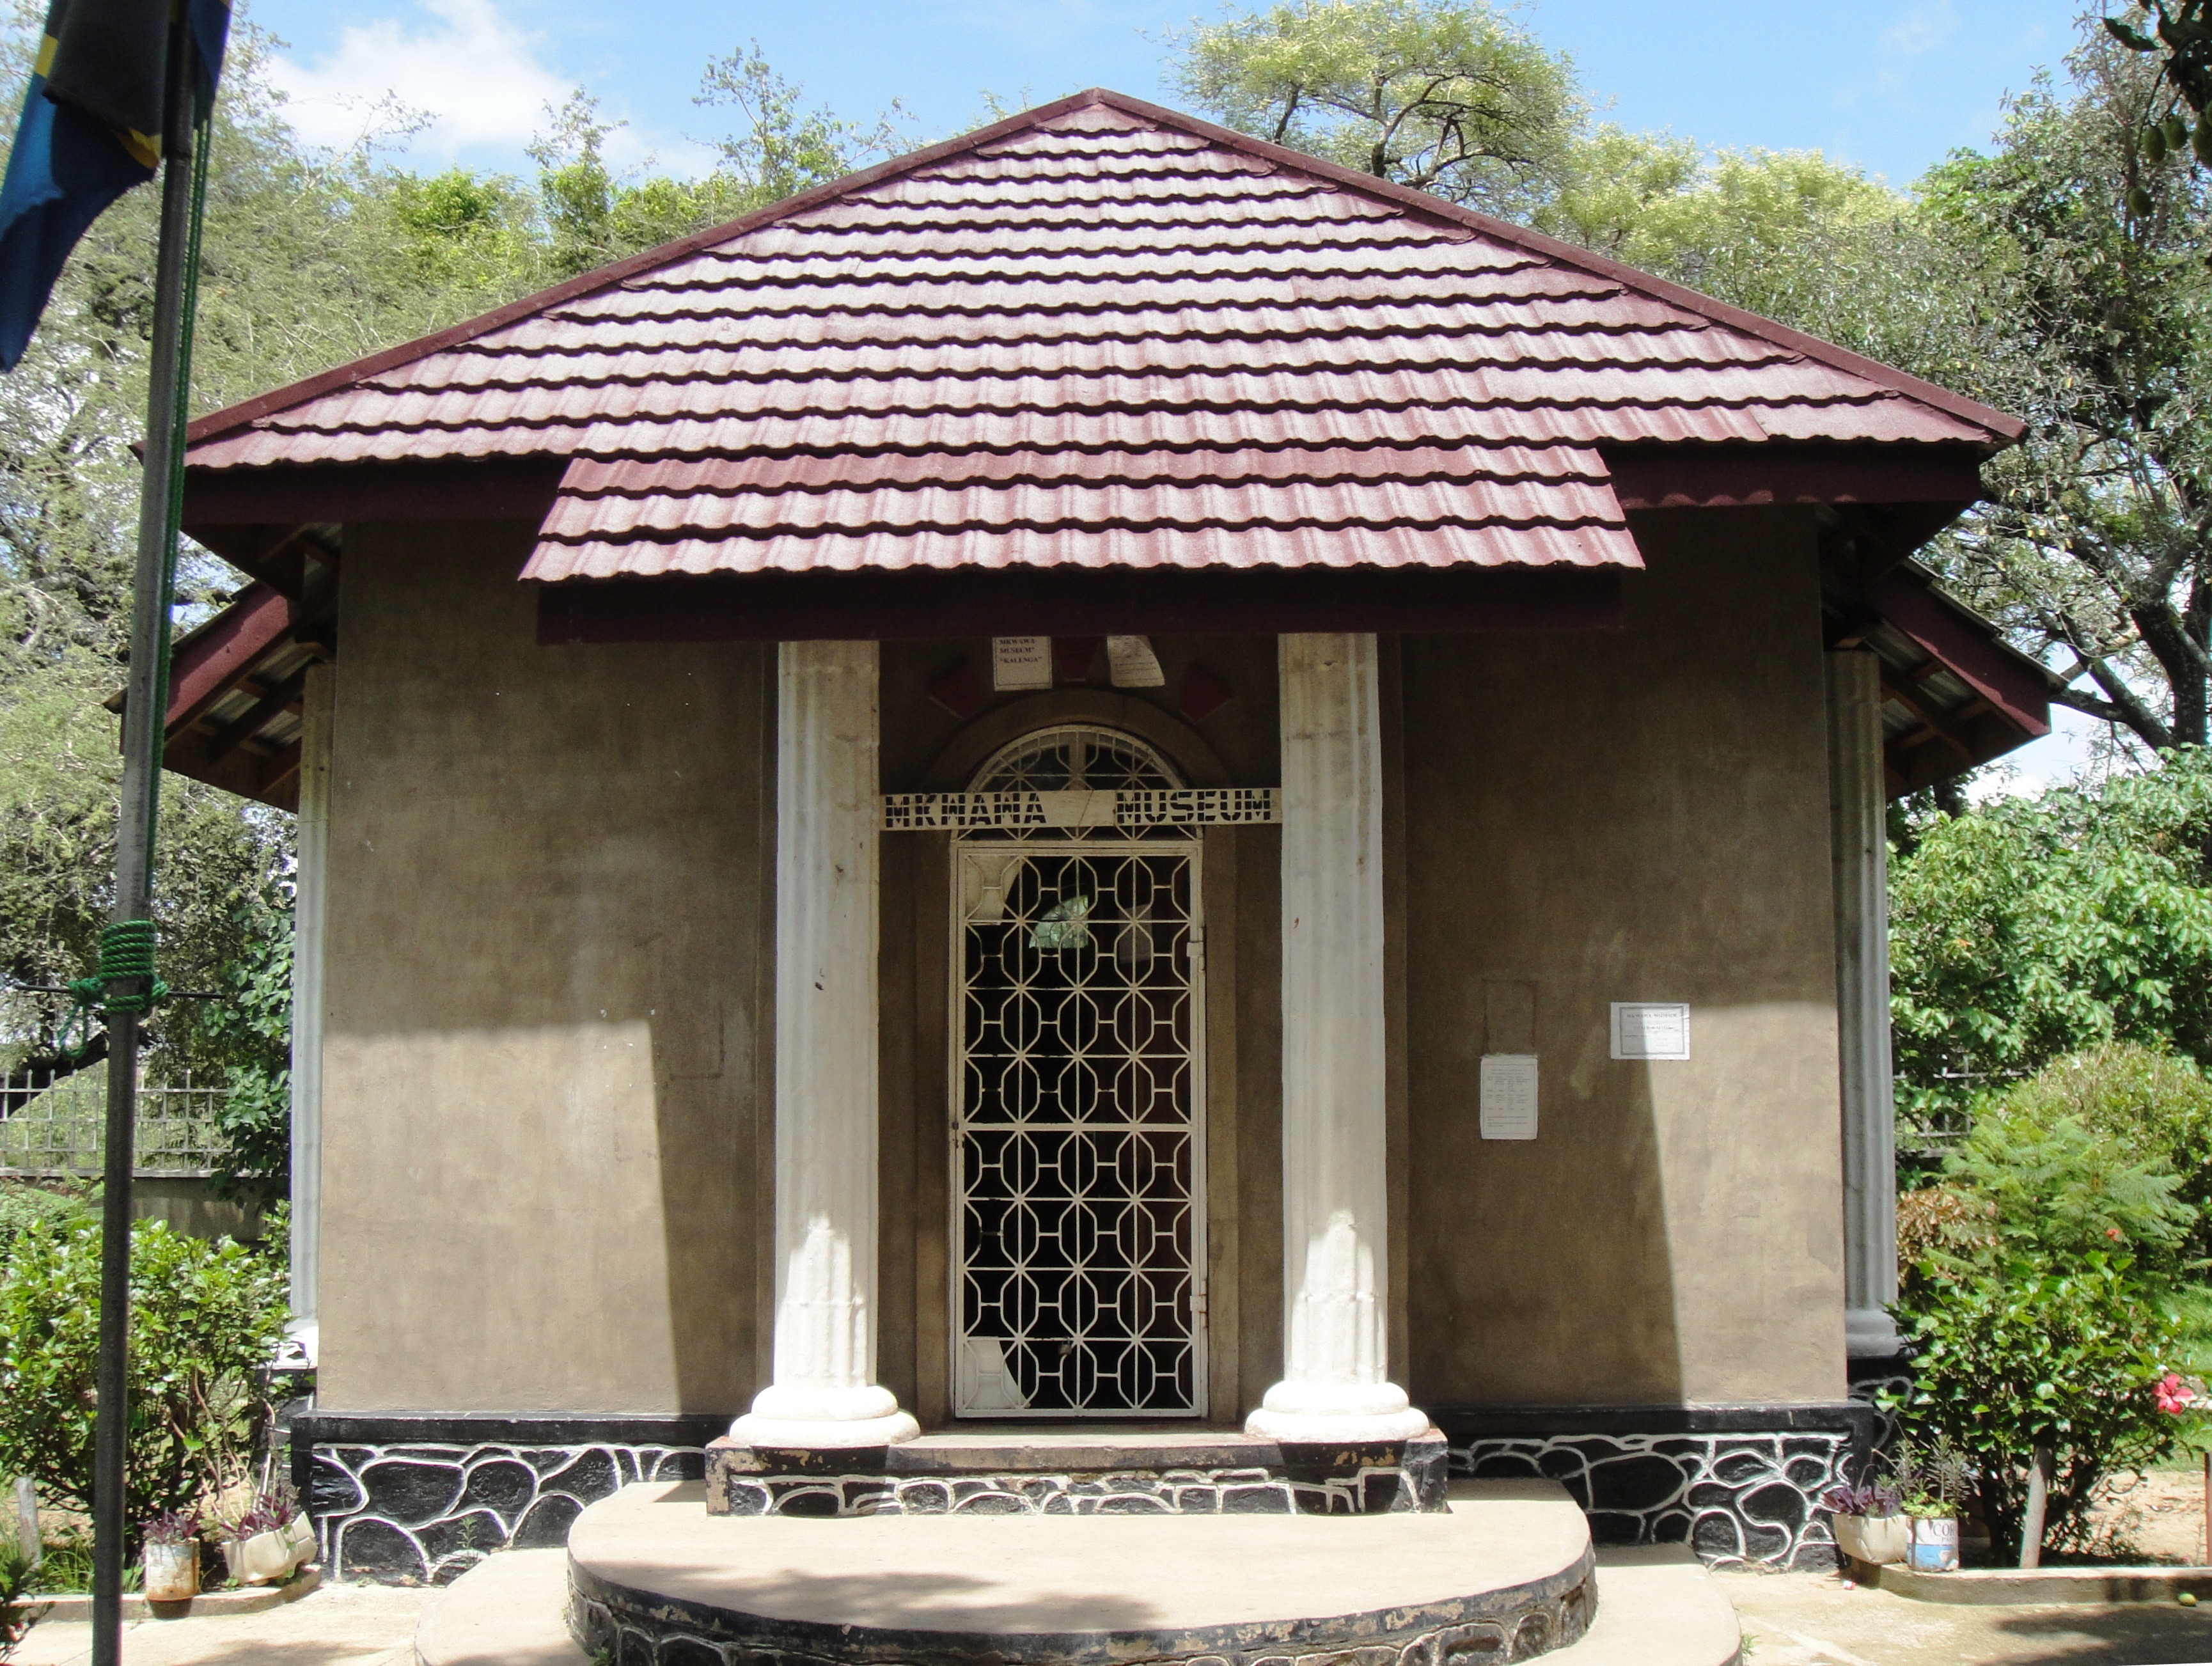 Mkwawa Museum